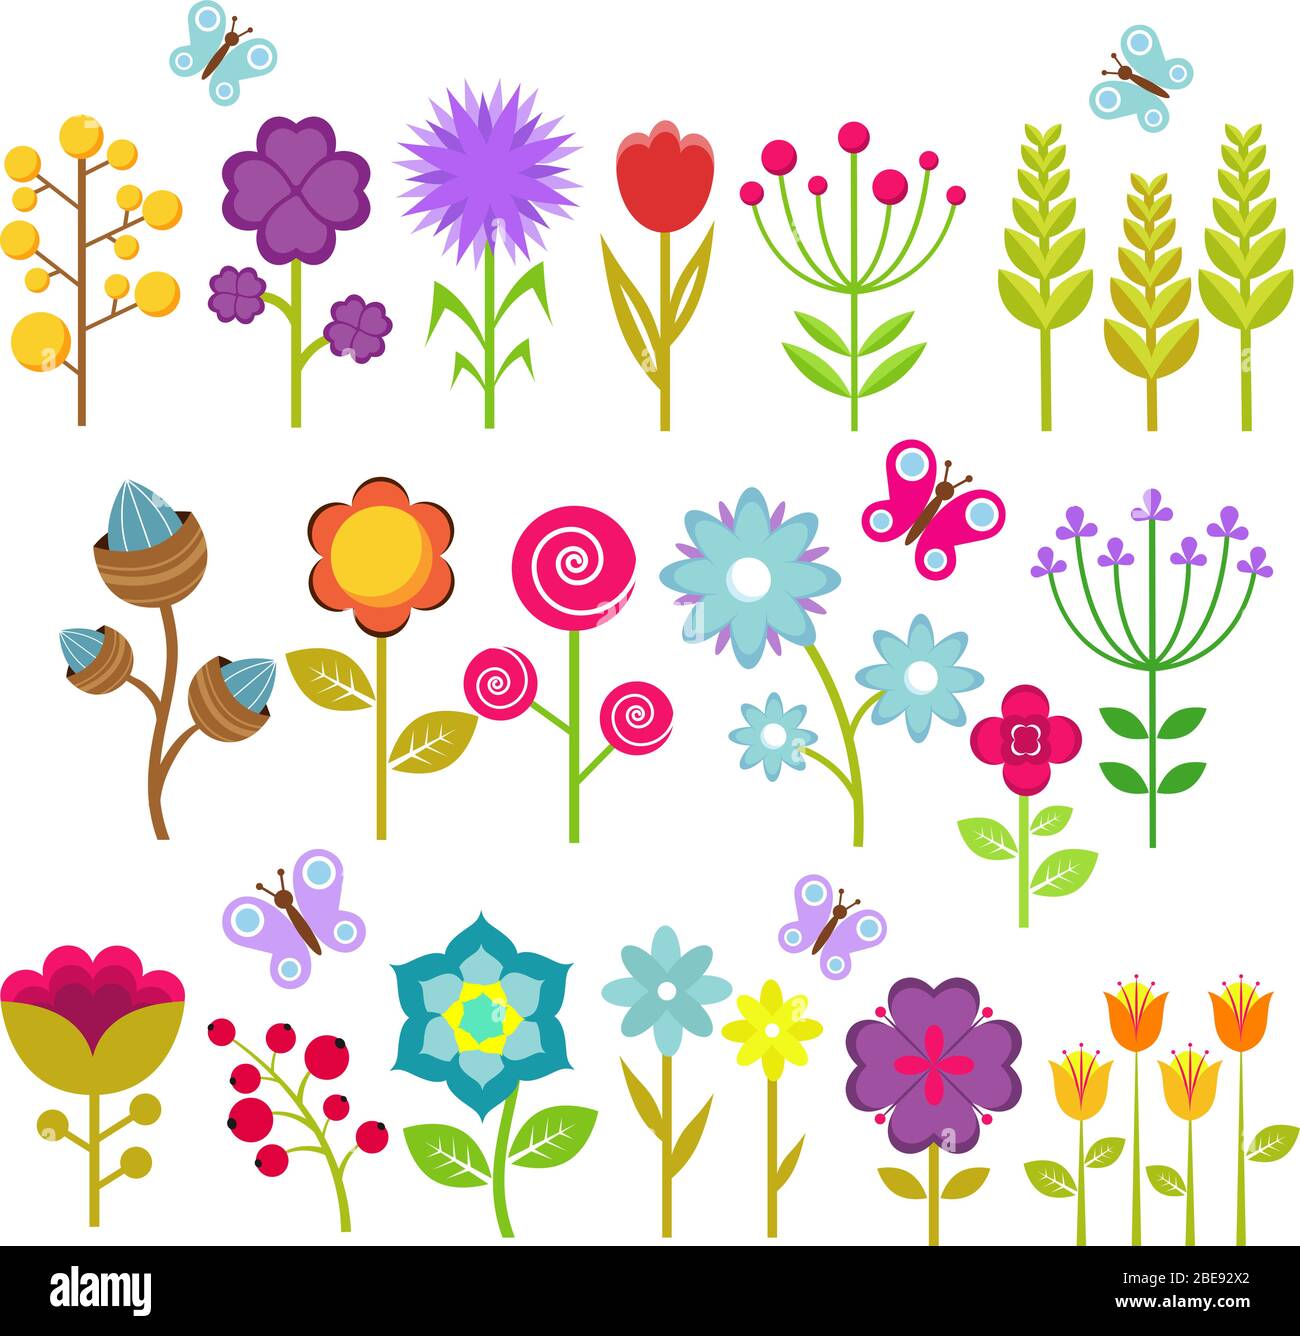 Collezione vettoriale isolata fiori estivi. Elementi floreali per un design retrò anni '70. Fiore vintage di illustrazione set Illustrazione Vettoriale